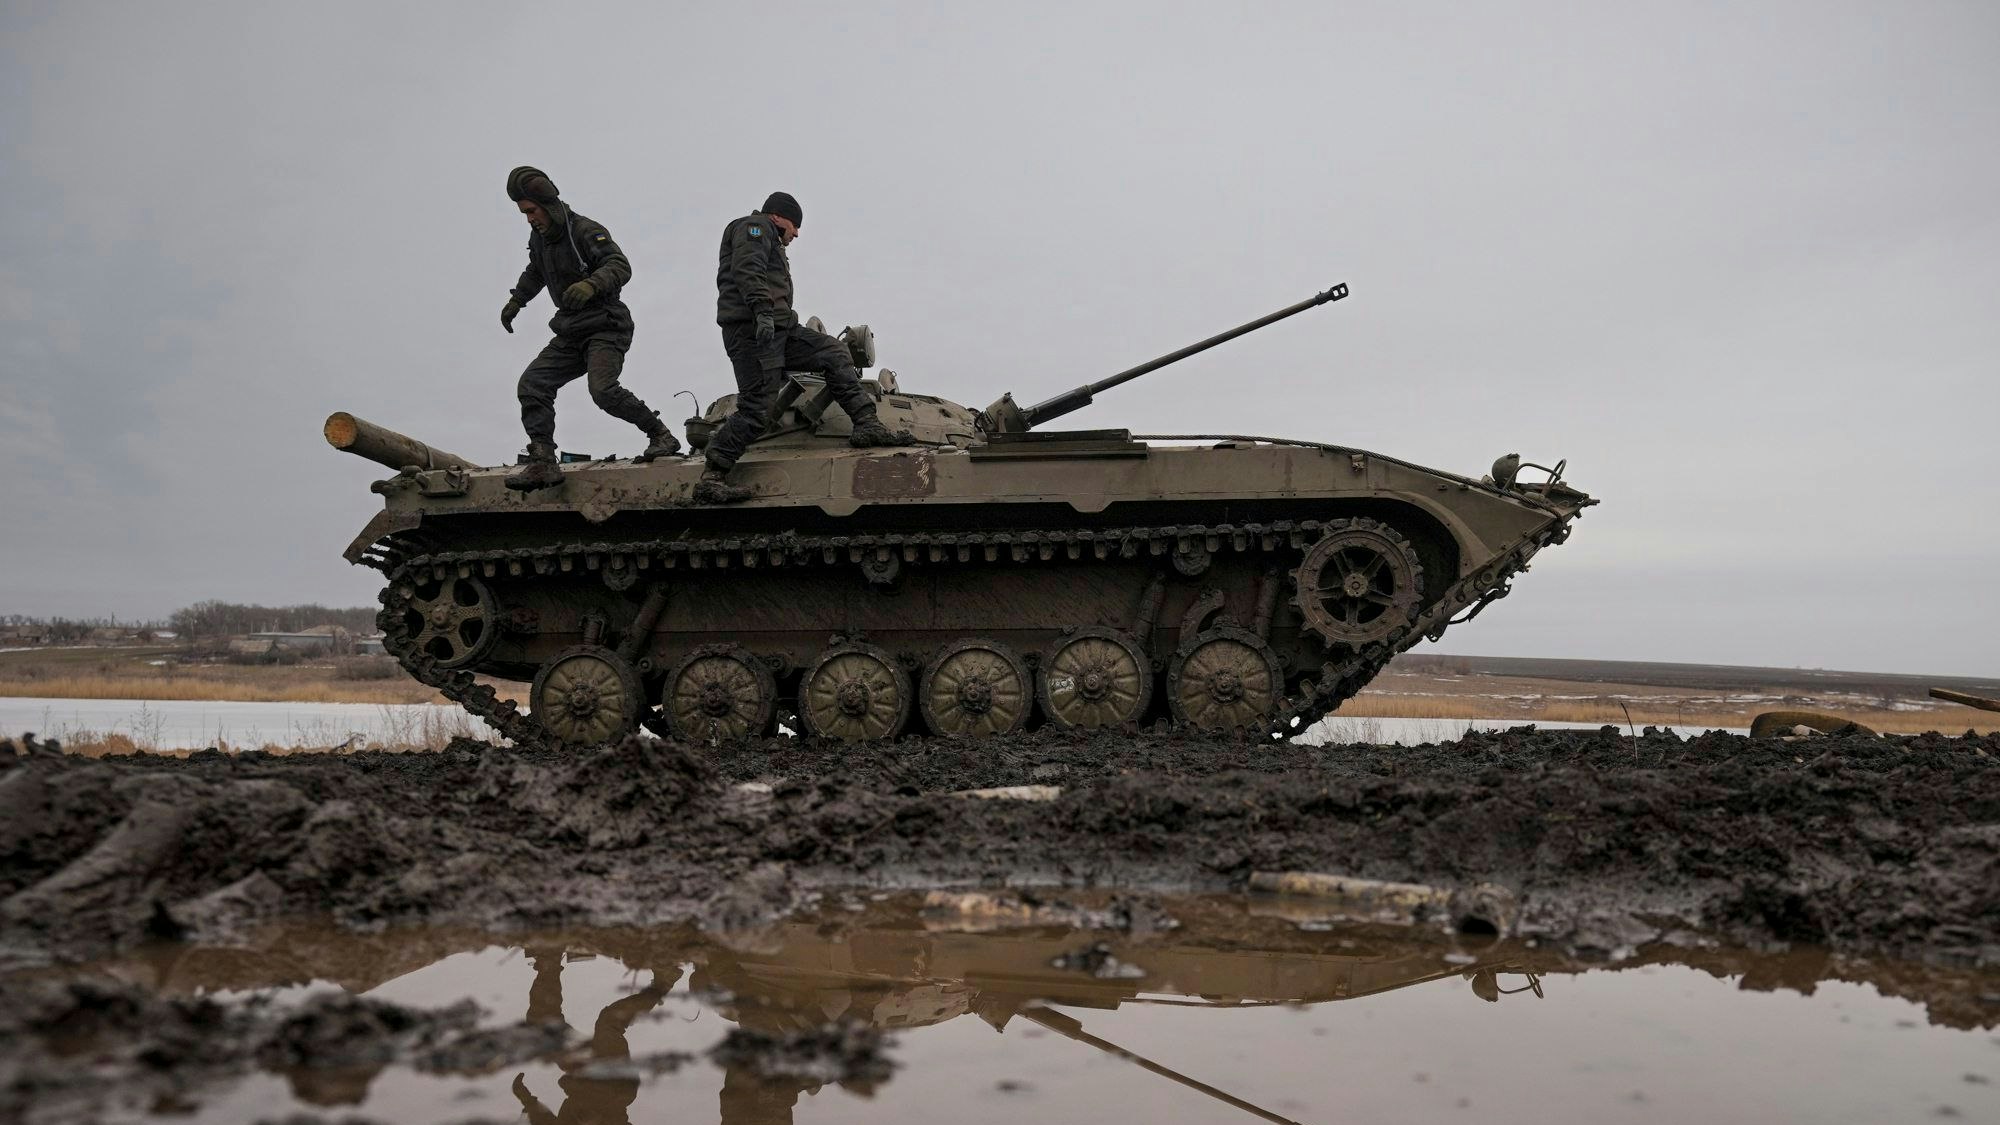 Zwei ukrainische Soldaten stehen während einer Schießübung auf einem Panzer, der auf einem Feld voller Pfützen steht.